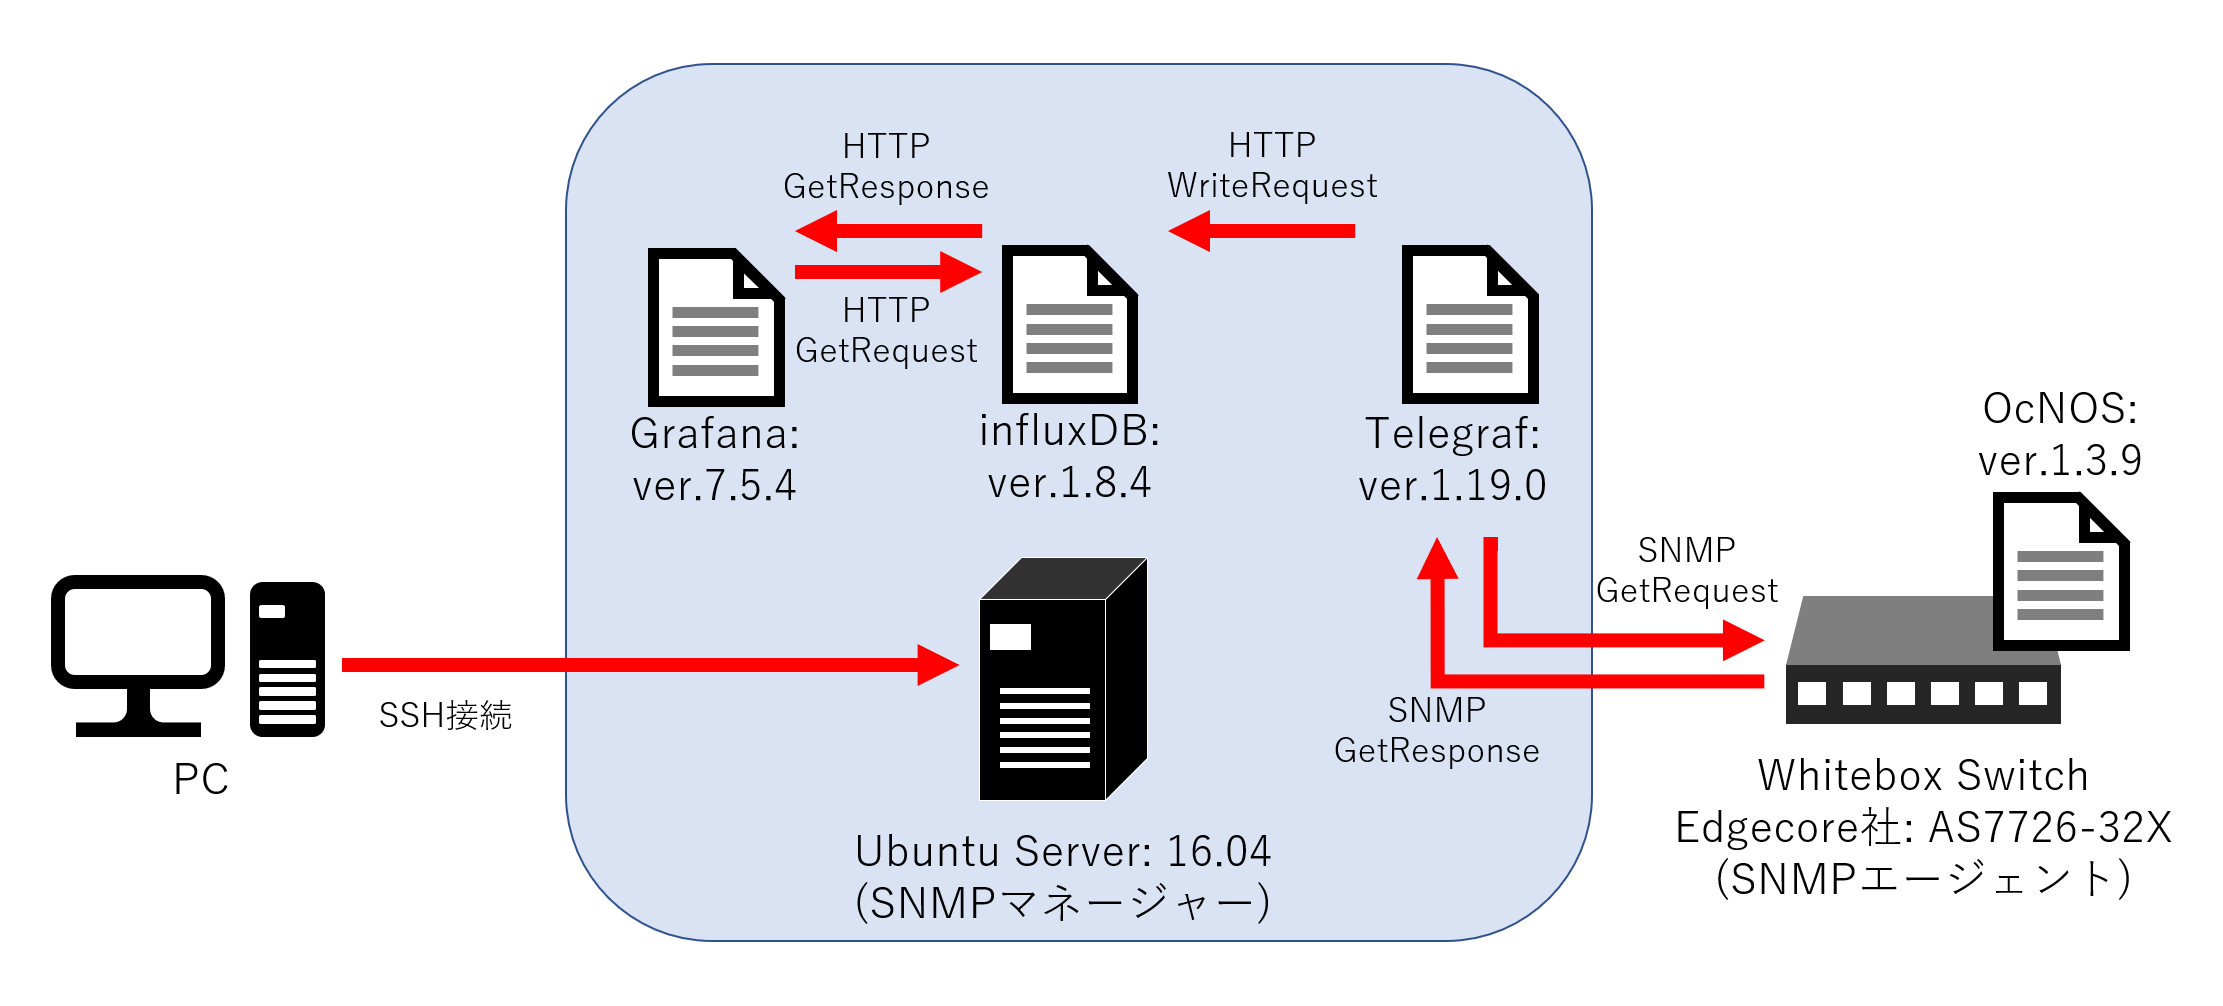 簡易的なネットワーク構成図